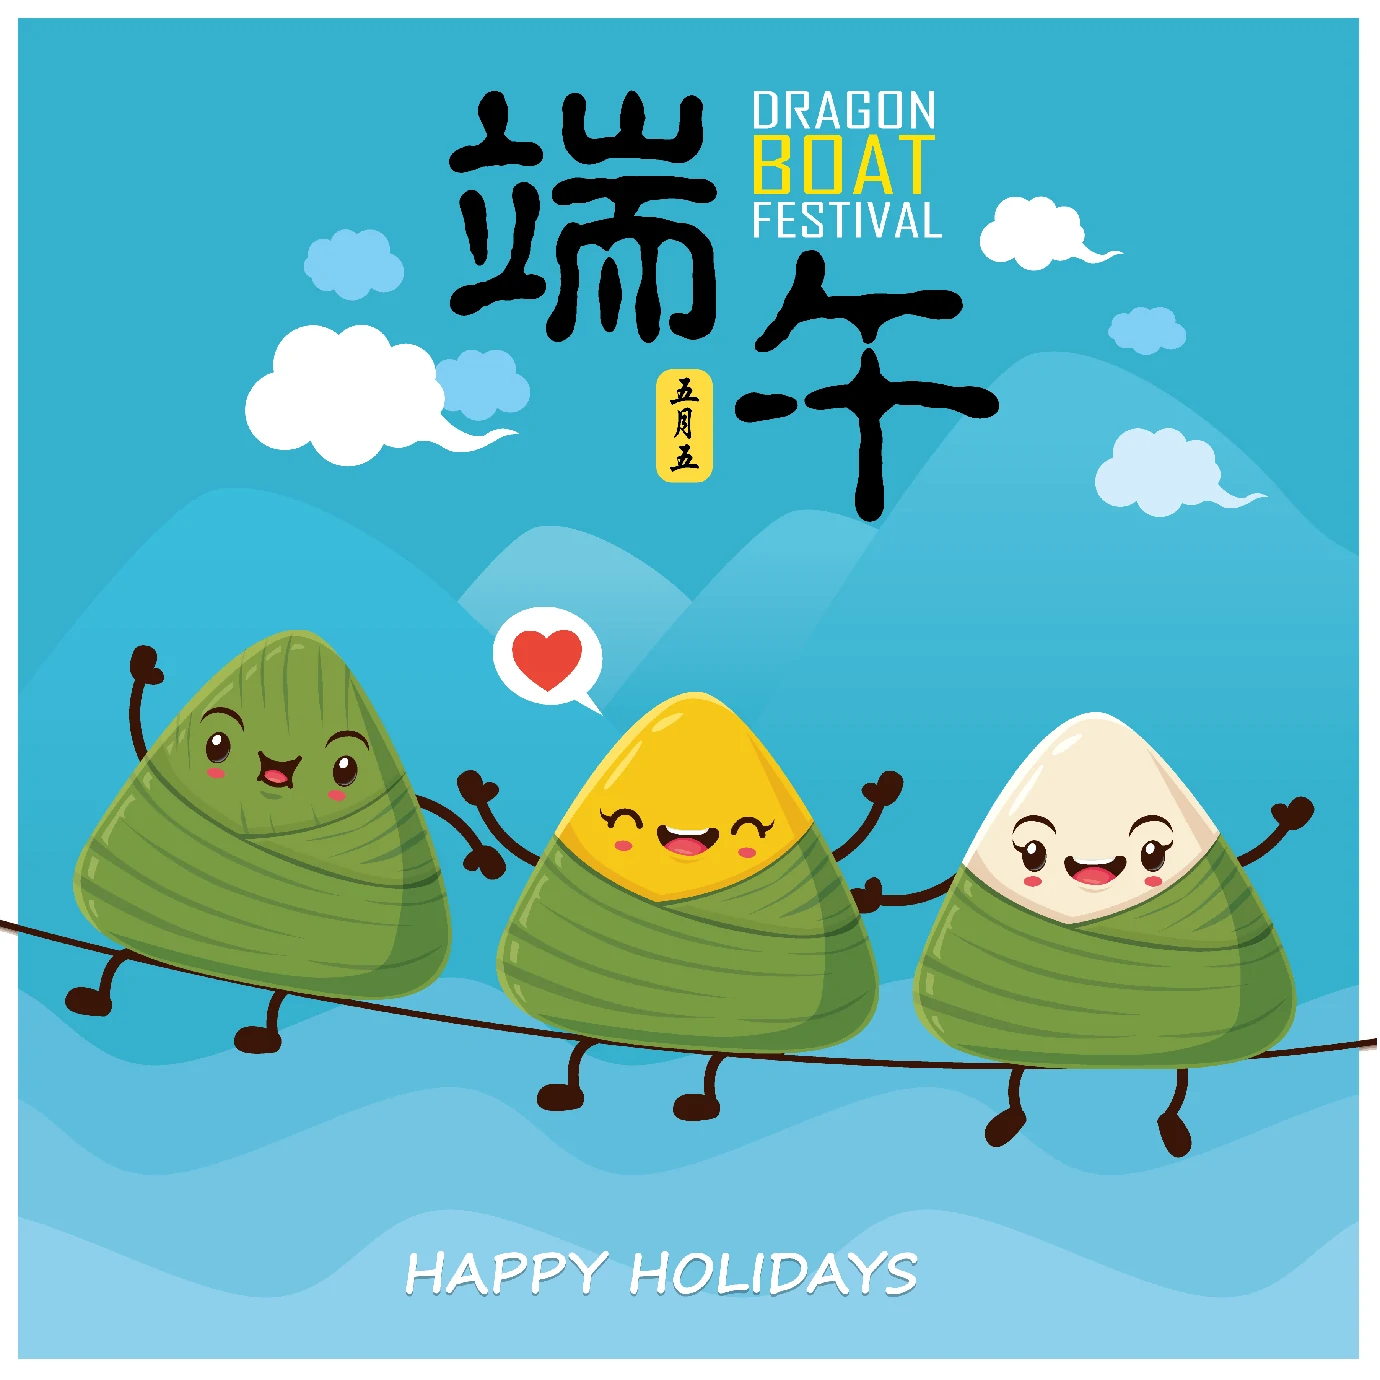 中国传统节日卡通手绘端午节赛龙舟粽子插画海报AI矢量设计素材【041】